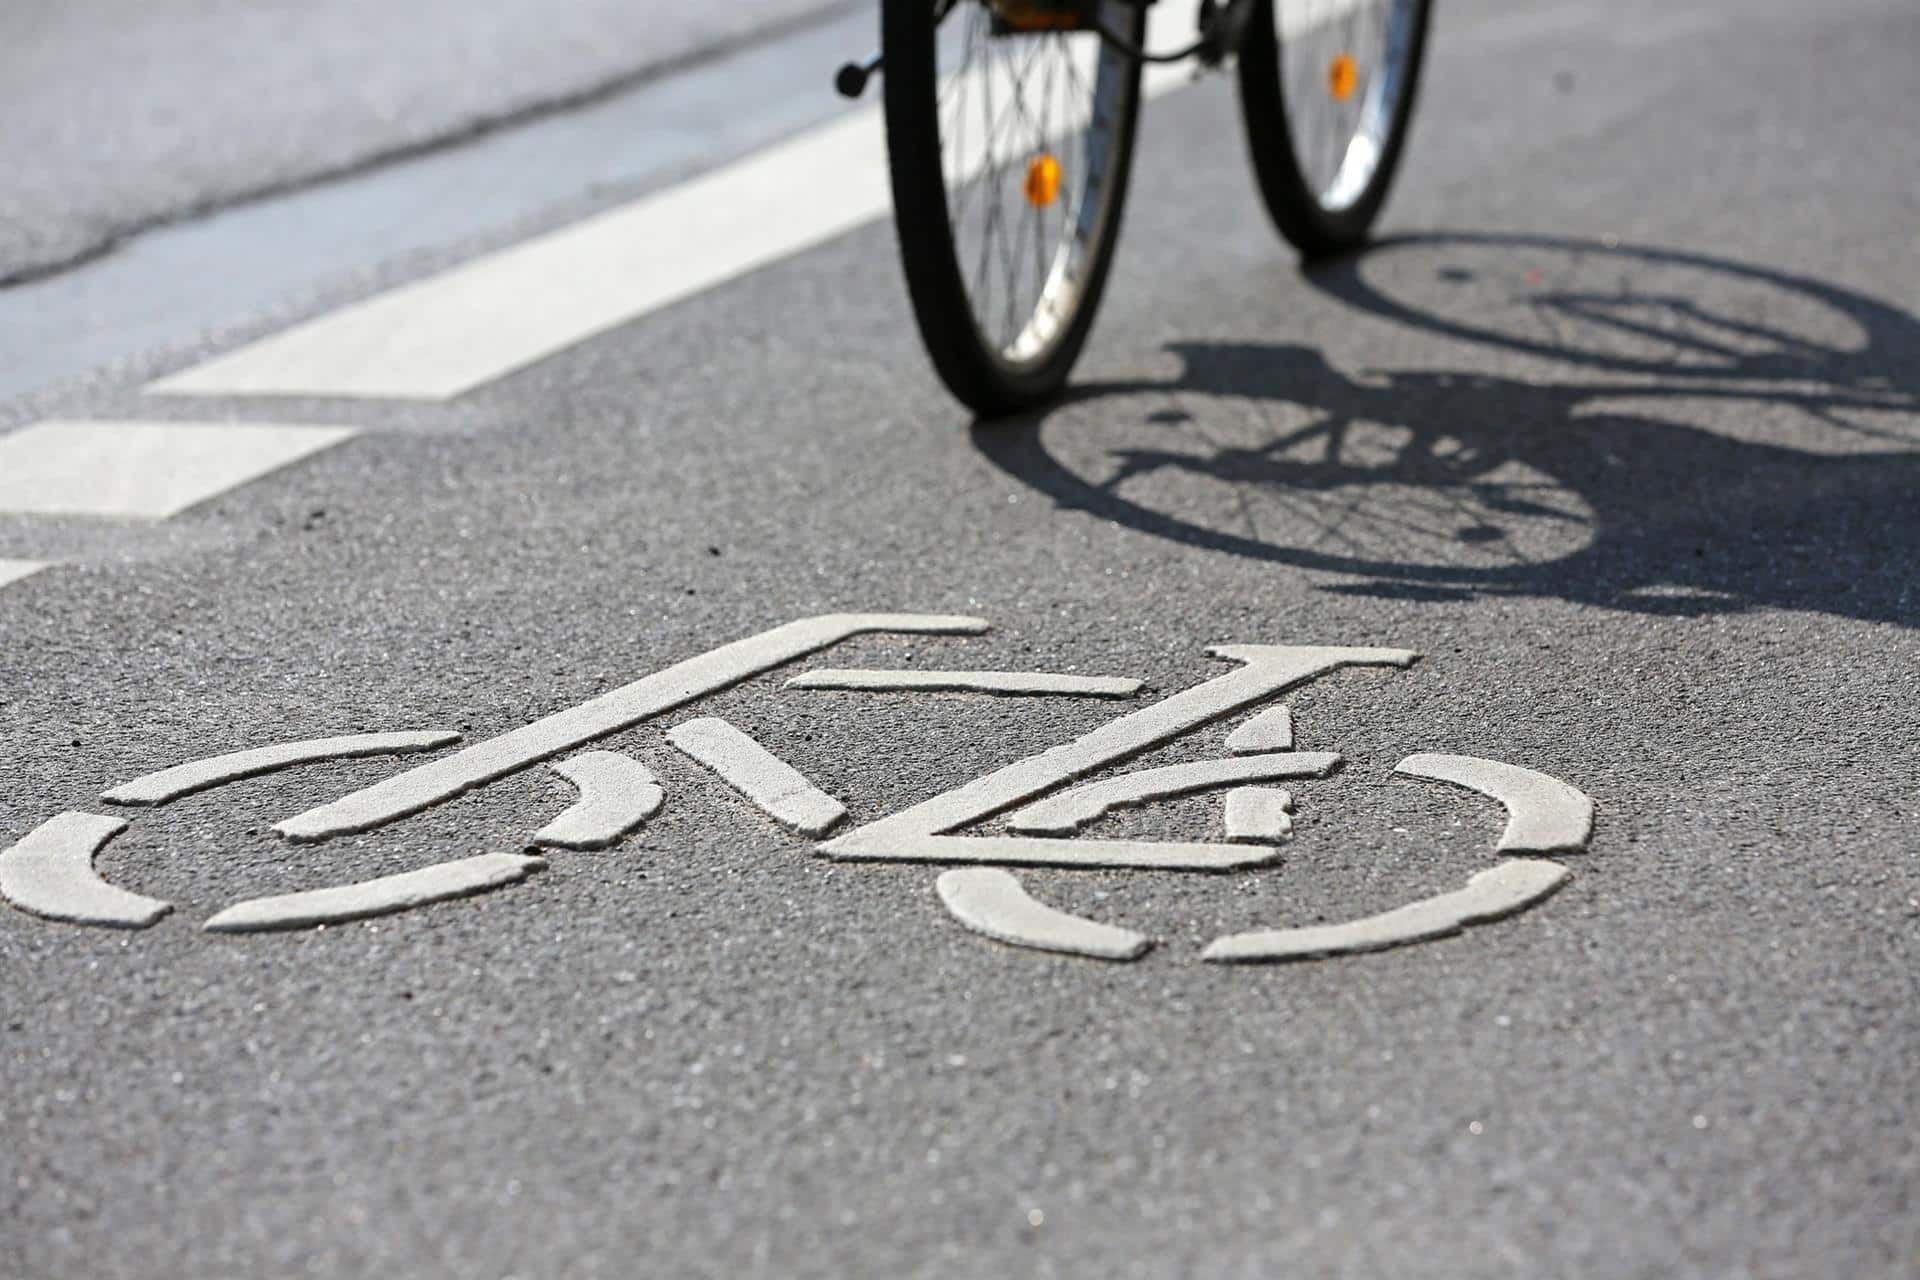 El nuevo reglamento forestal permitirá el uso de bicicletas y eléctricas de asistencia al pedaleo en pistas y sendas